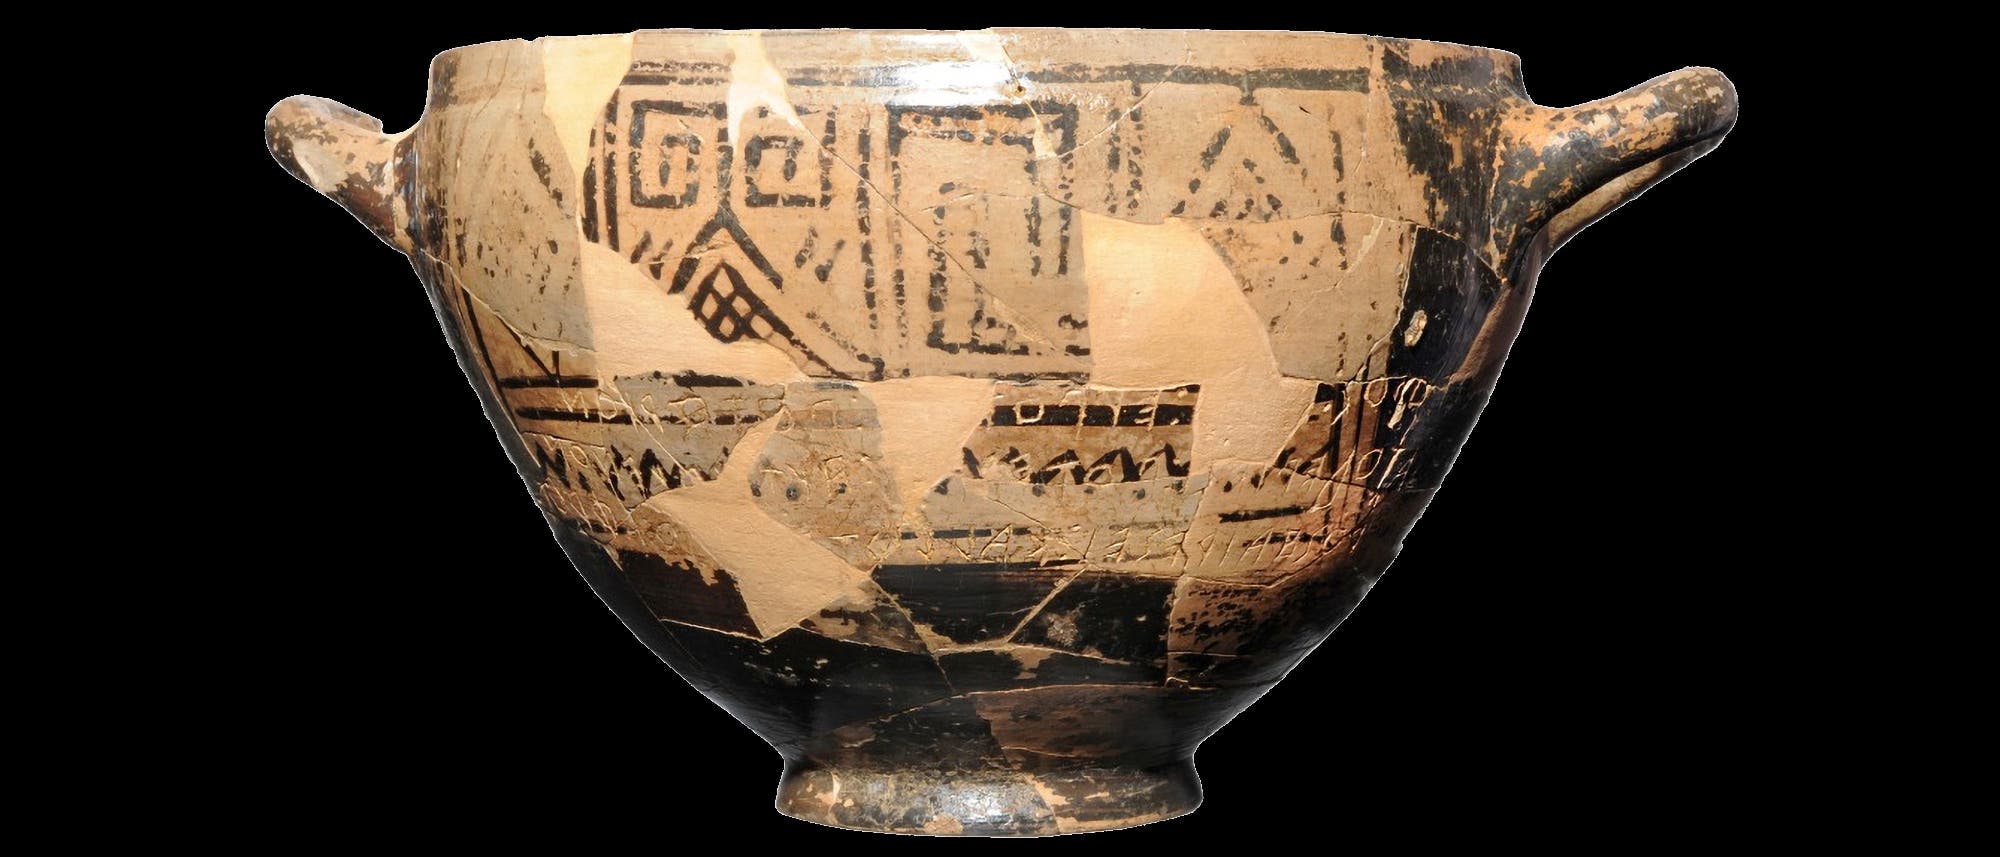 Der »Nestorbecher« aus dem späten 8. Jahrhundert v. Chr. ist gut zehn Zentimeter hoch und fasst etwas mehr als einen Liter. Auf der Außenseite hatte man einen Text im Versmaß eingeritzt.